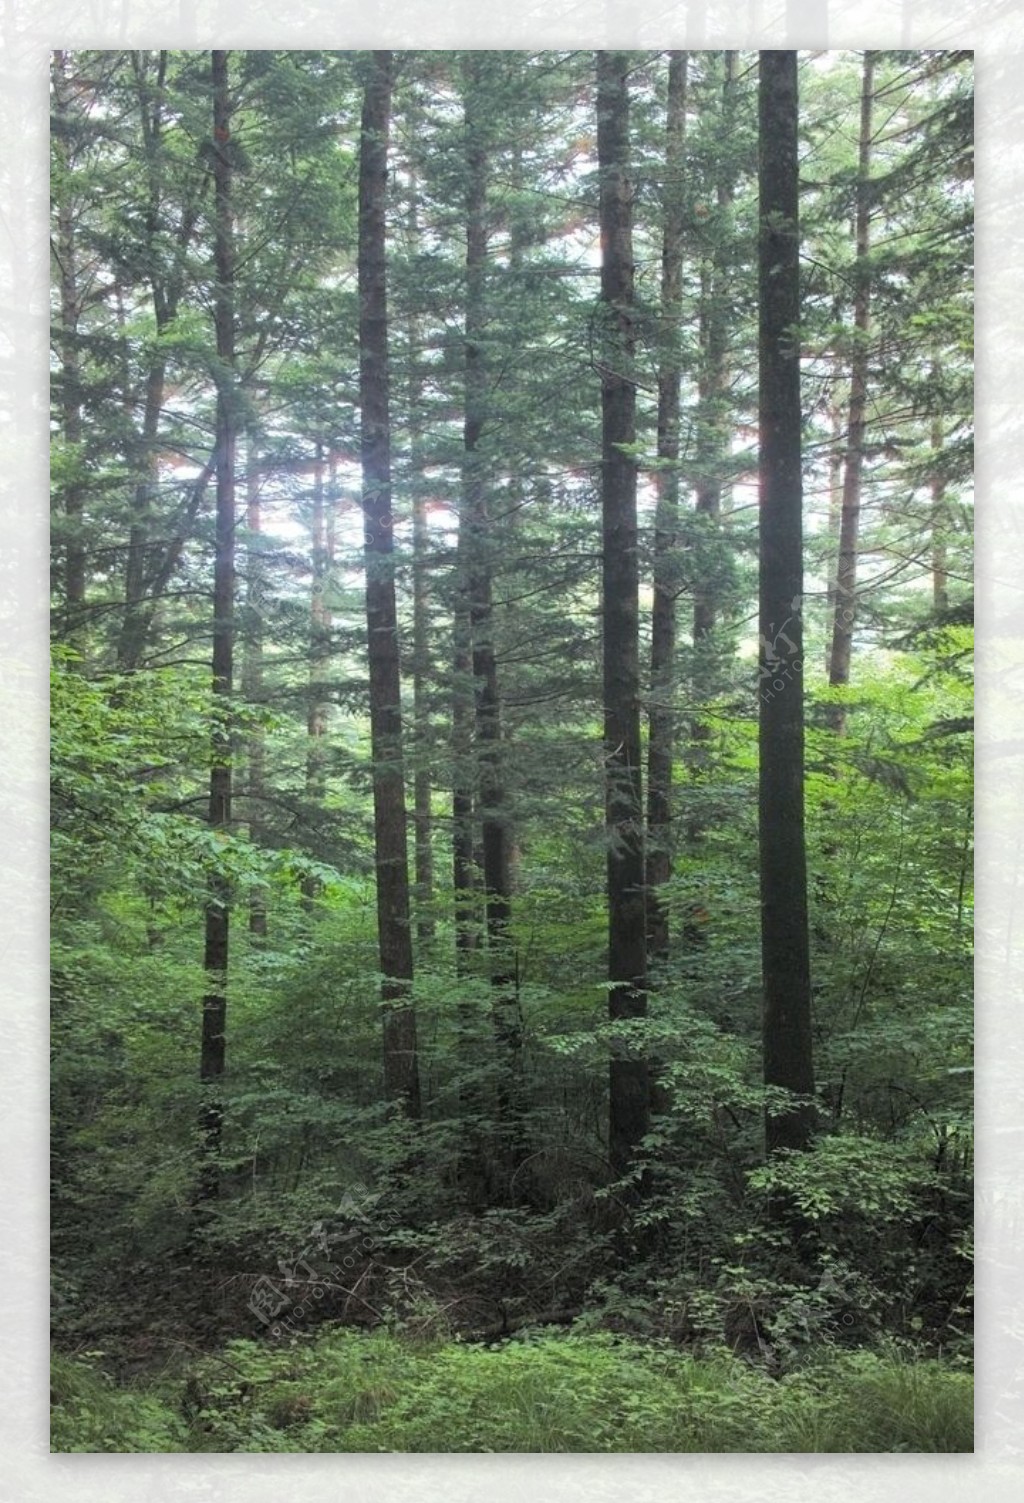 森林风景图片